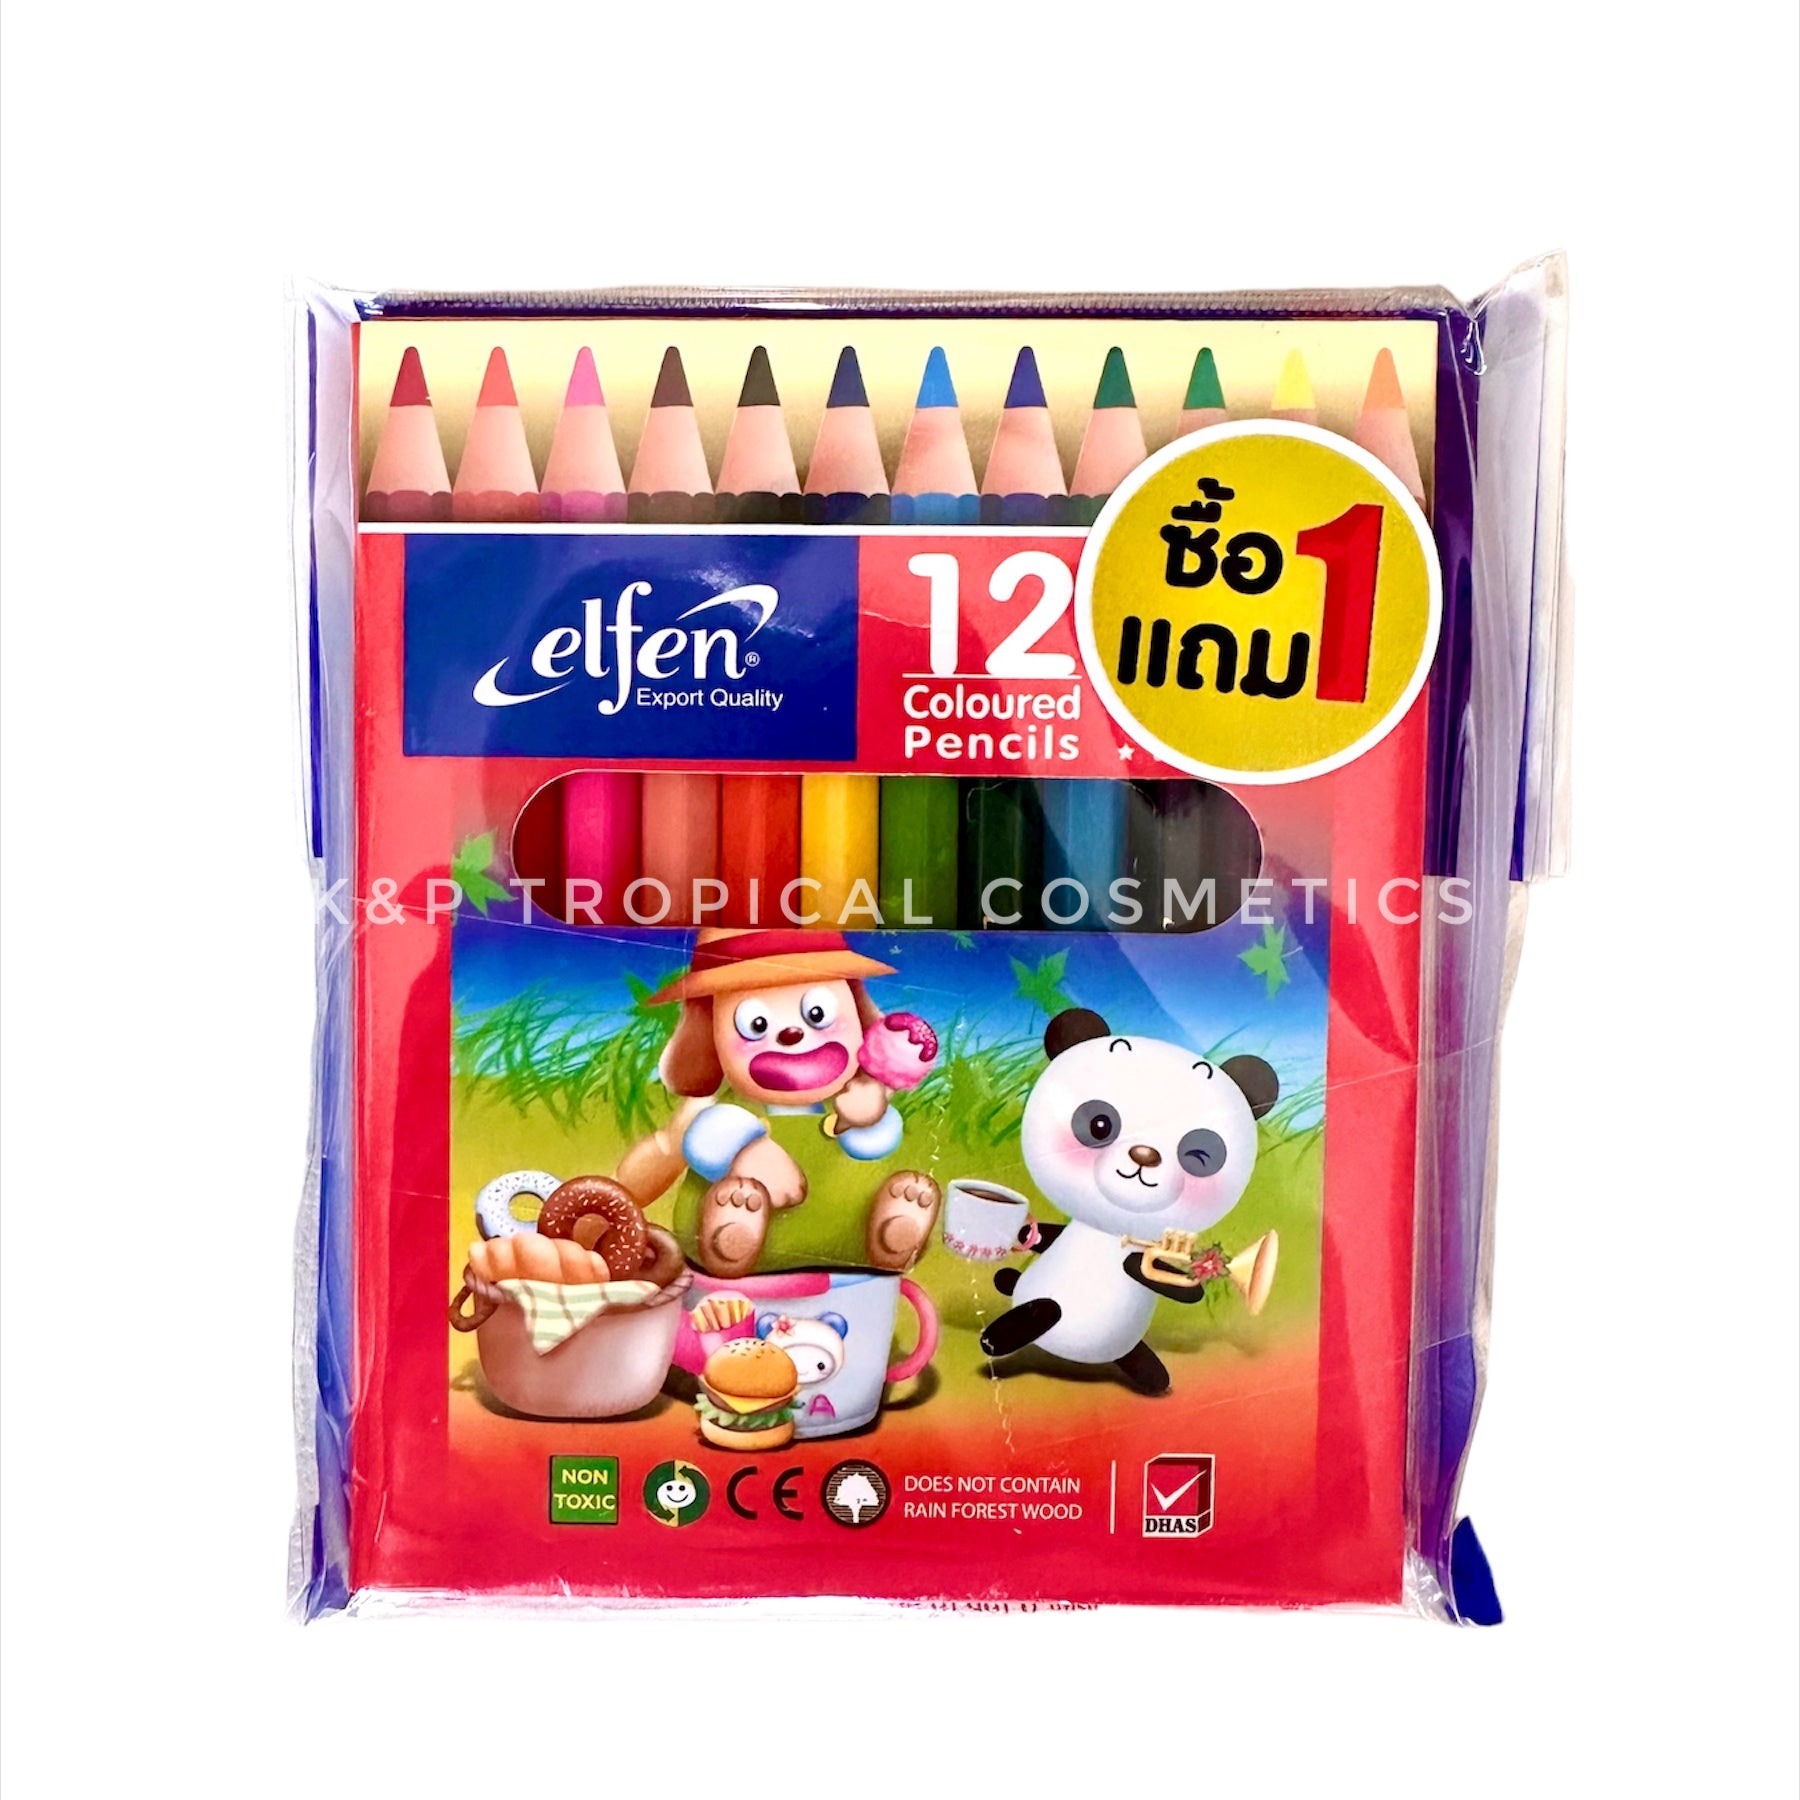 Elfen Coloured Pencils set 12 pcs.*2 packs, Набор цветных карандашей 12 шт.*2 упаковки